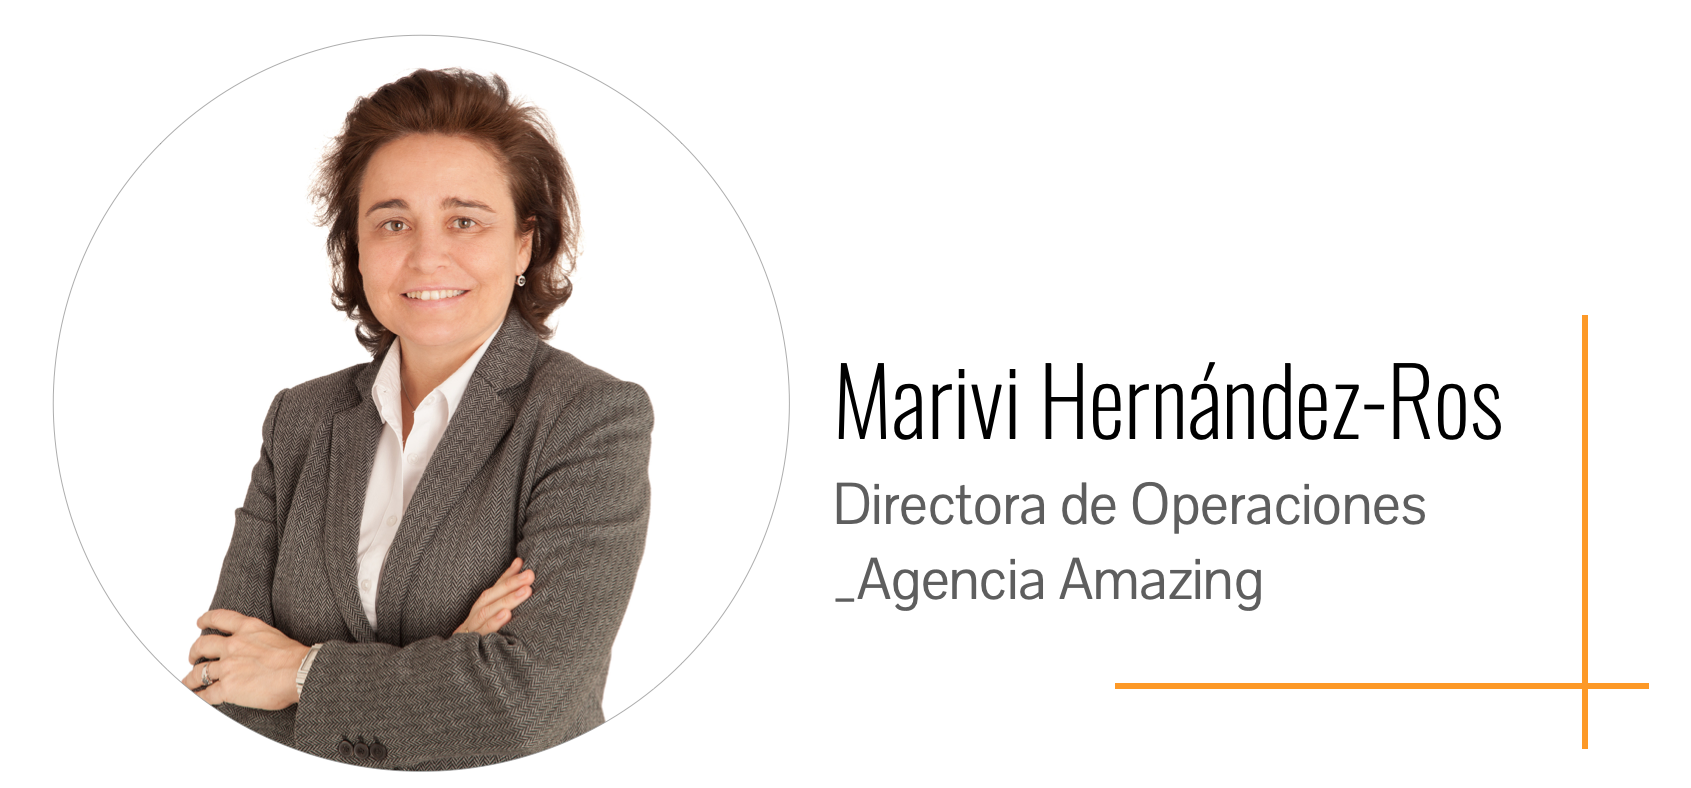 Marivi Hernández-Ros, Directora de Operaciones de Amazing